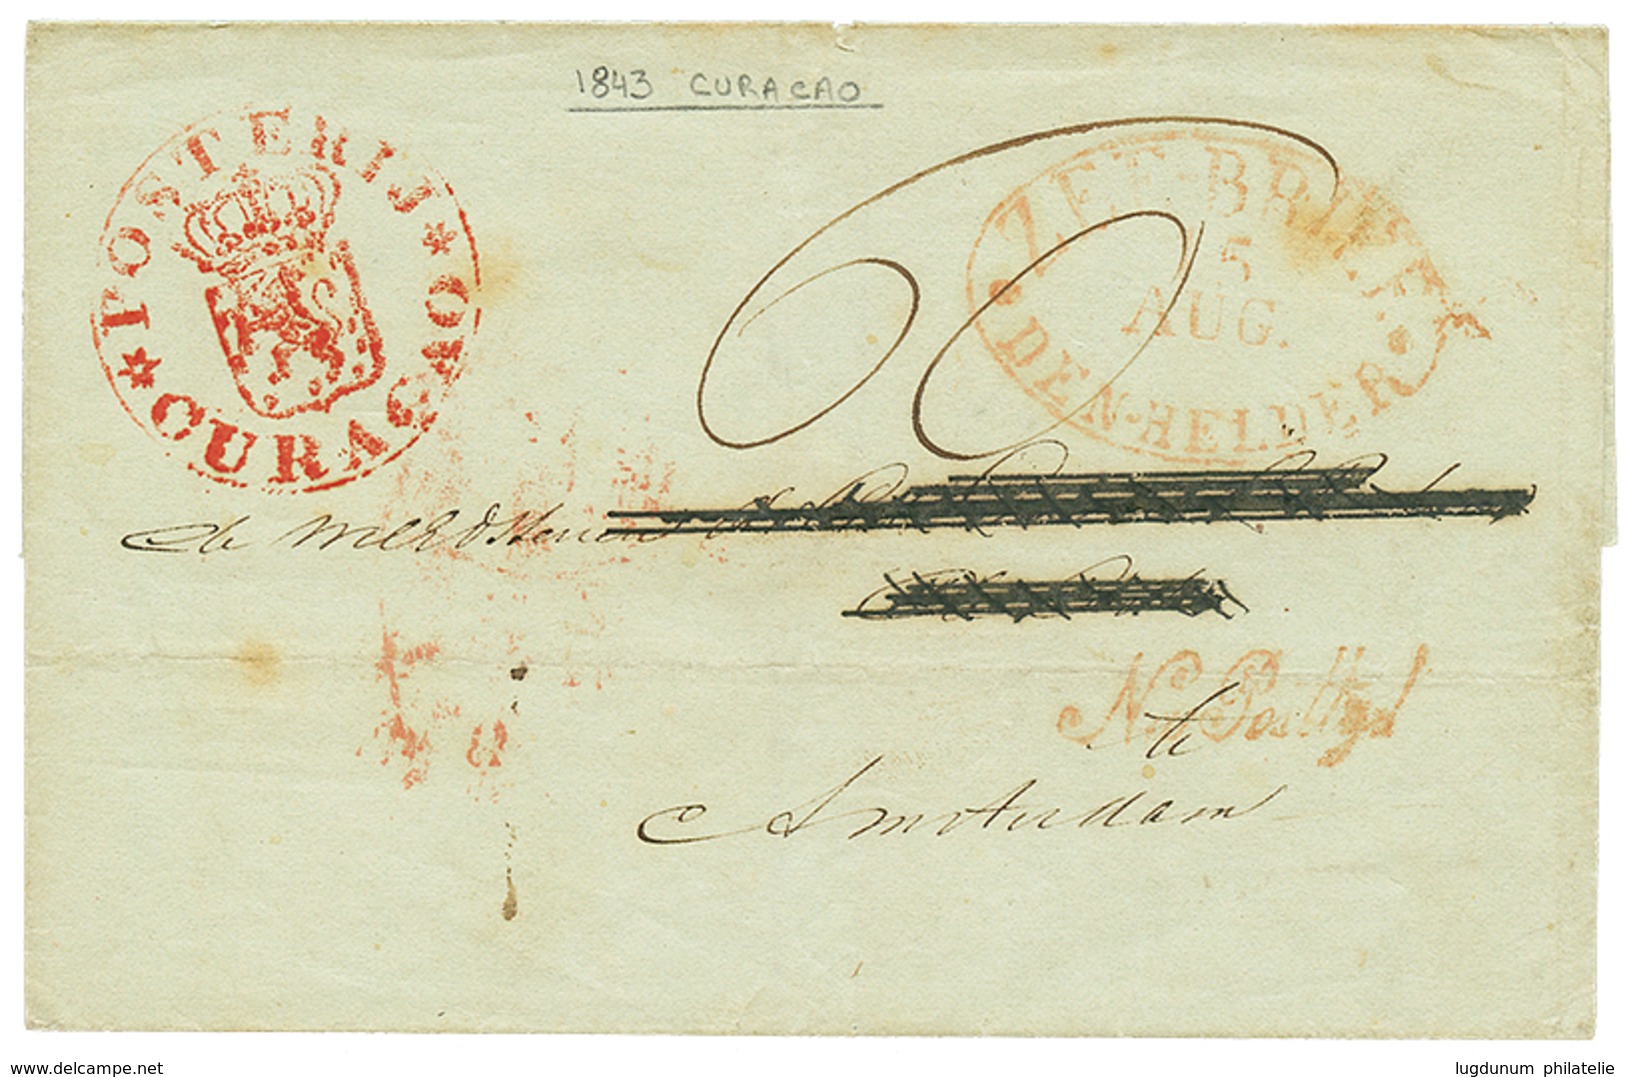 CURACAO : 1846 POSTERIJ CURACAO In Red + ZEEBRIEF/DEN HELDER + NA POSTTYL On Entire (name Erased) From CURACAO To AMSTER - Niederländische Antillen, Curaçao, Aruba